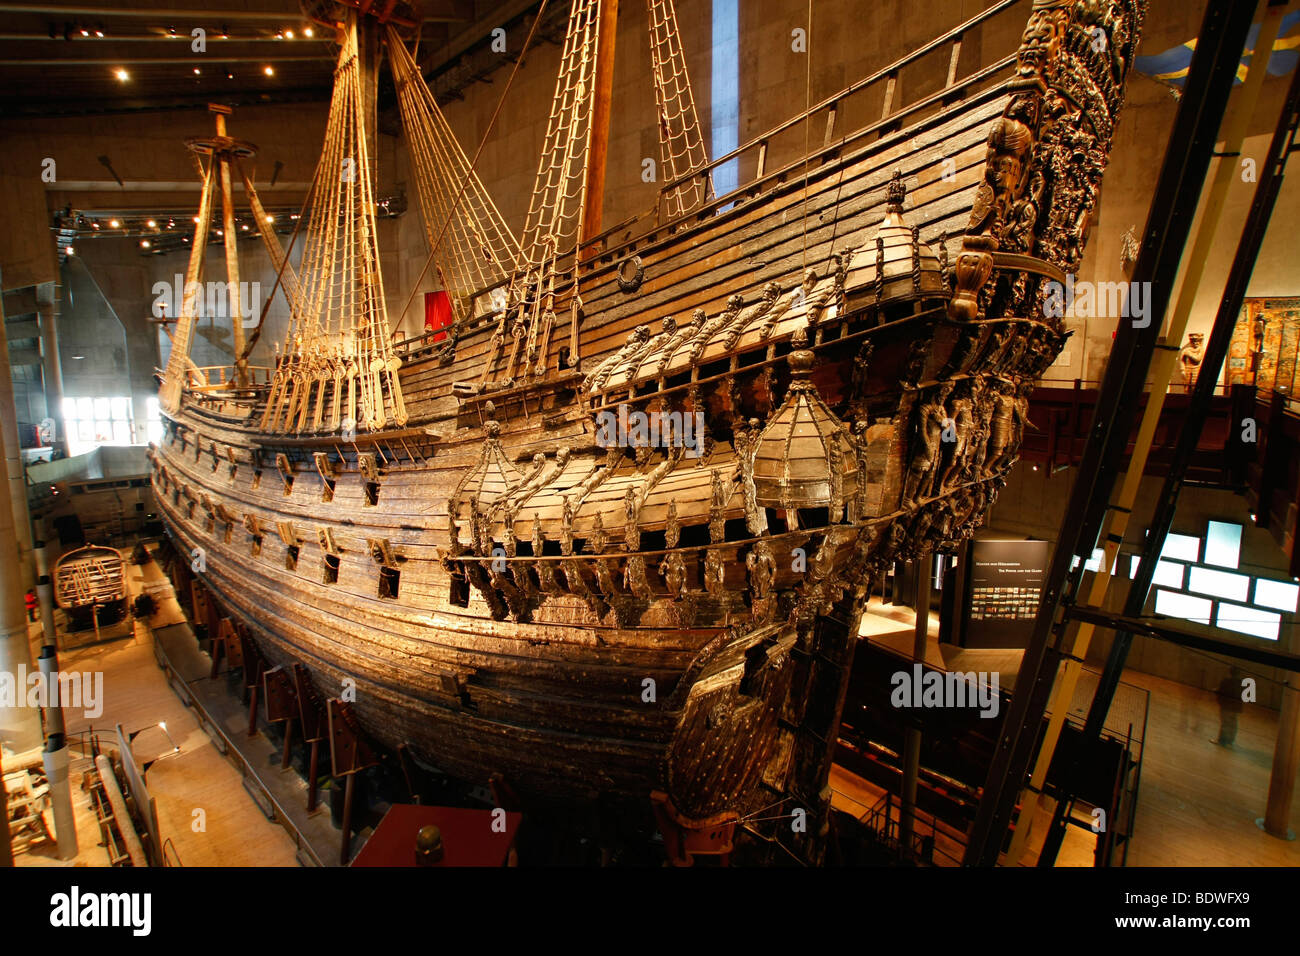 Vasa ship museum immagini e fotografie stock ad alta risoluzione - Alamy